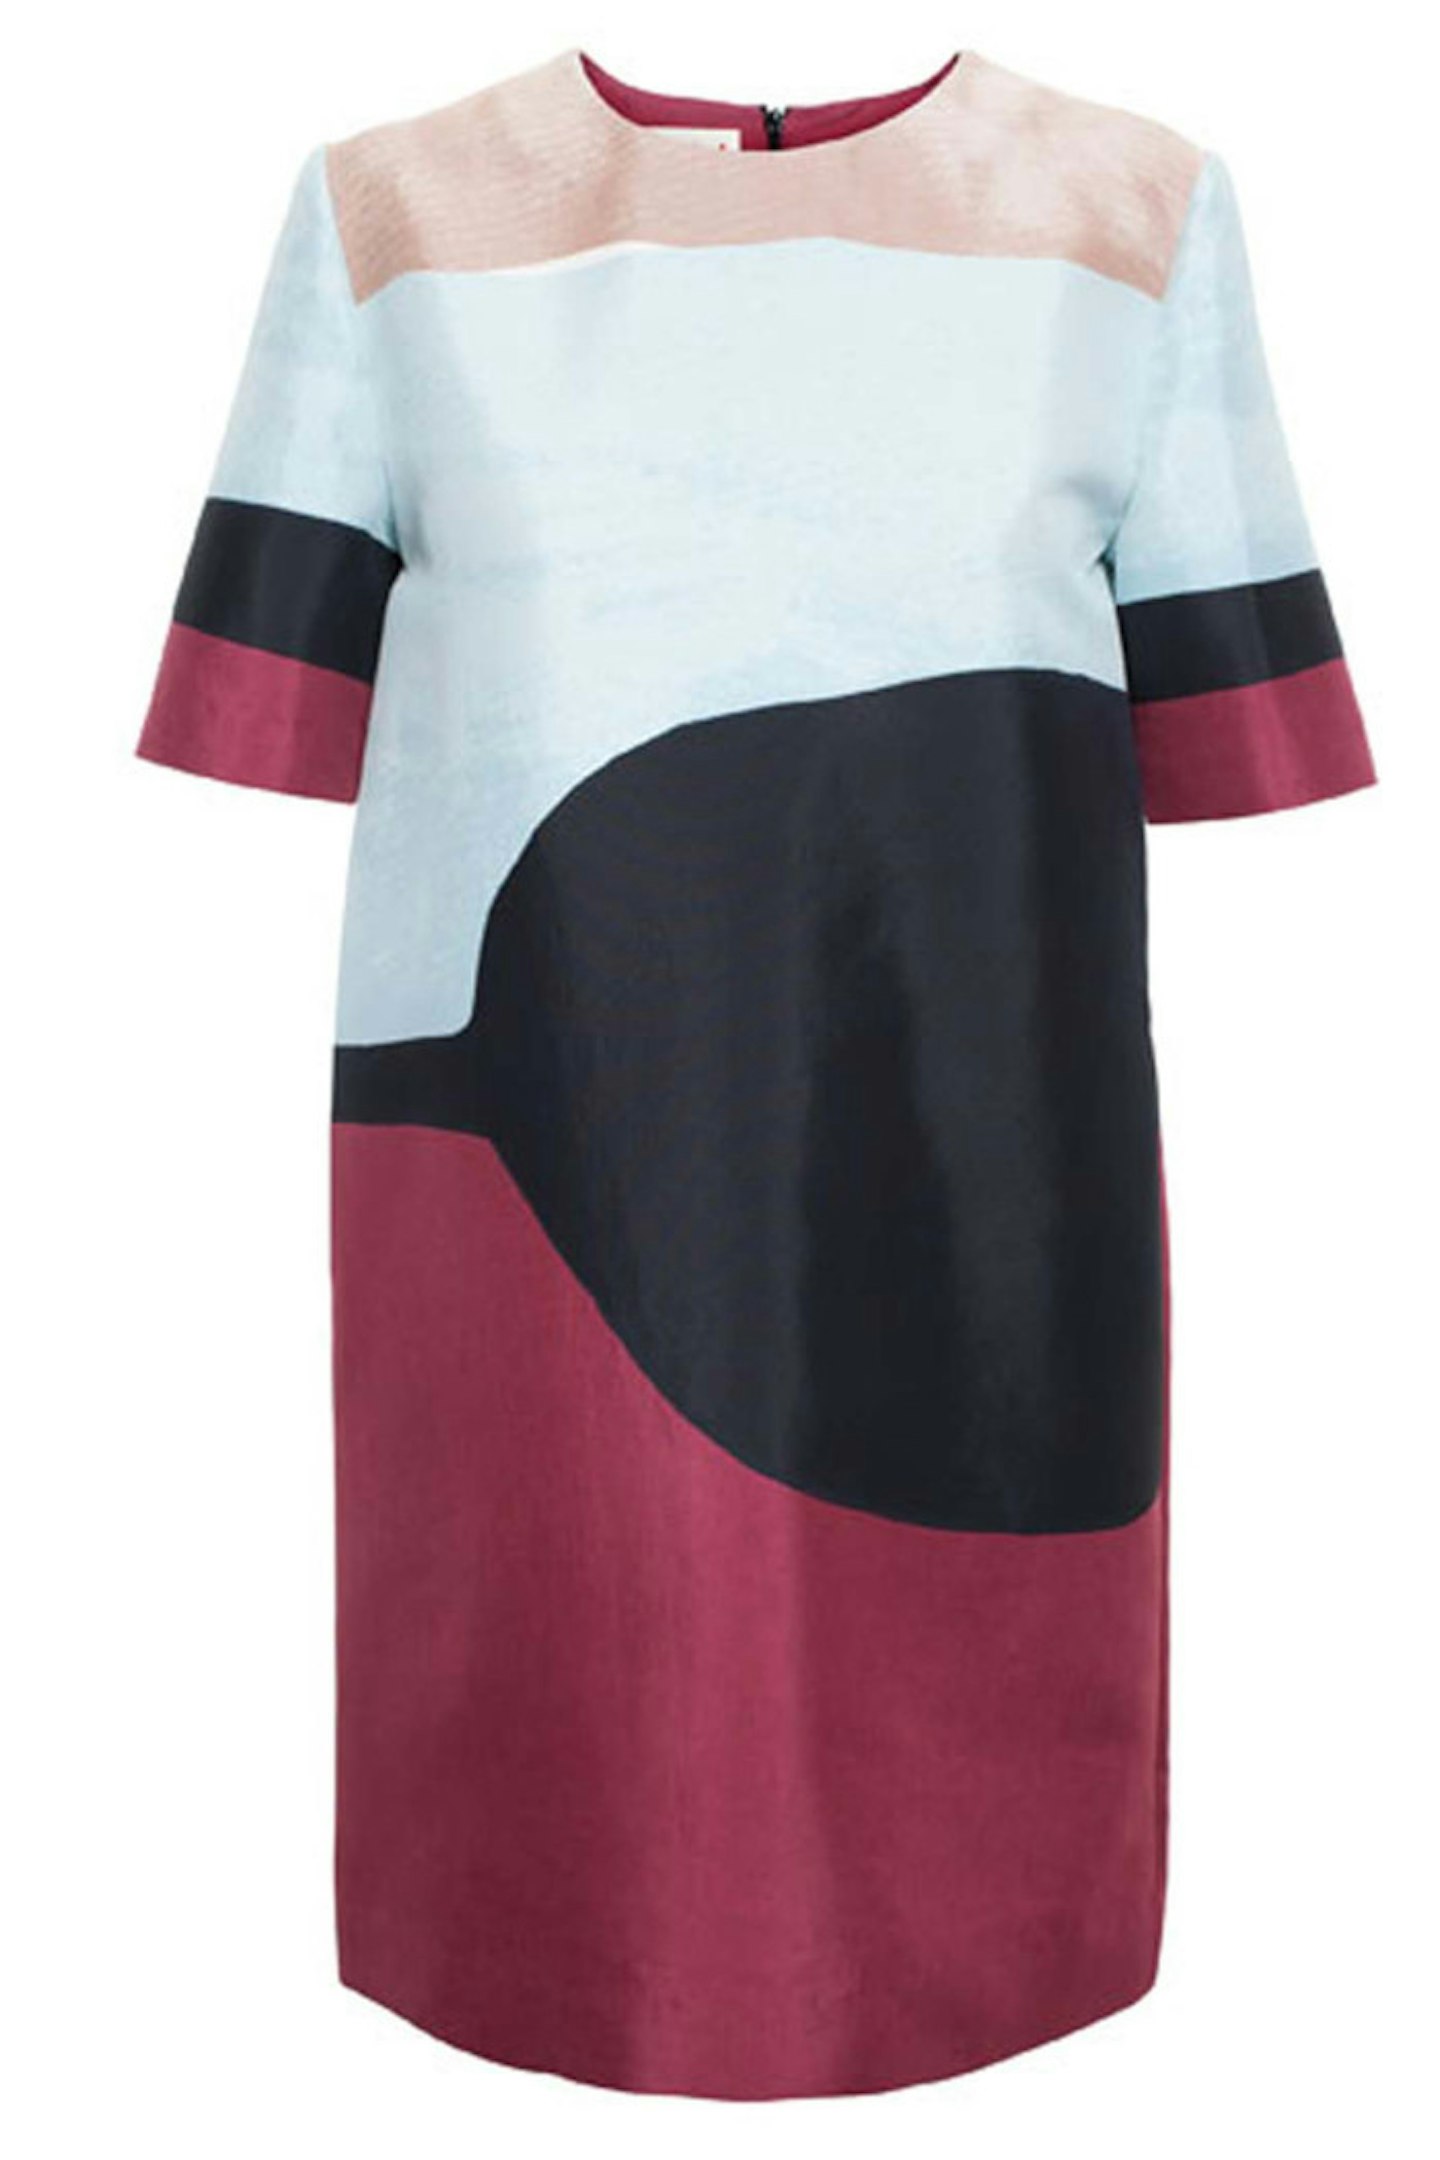 Multicoloured Abstract Print Dress, £1150, Marni at Browns